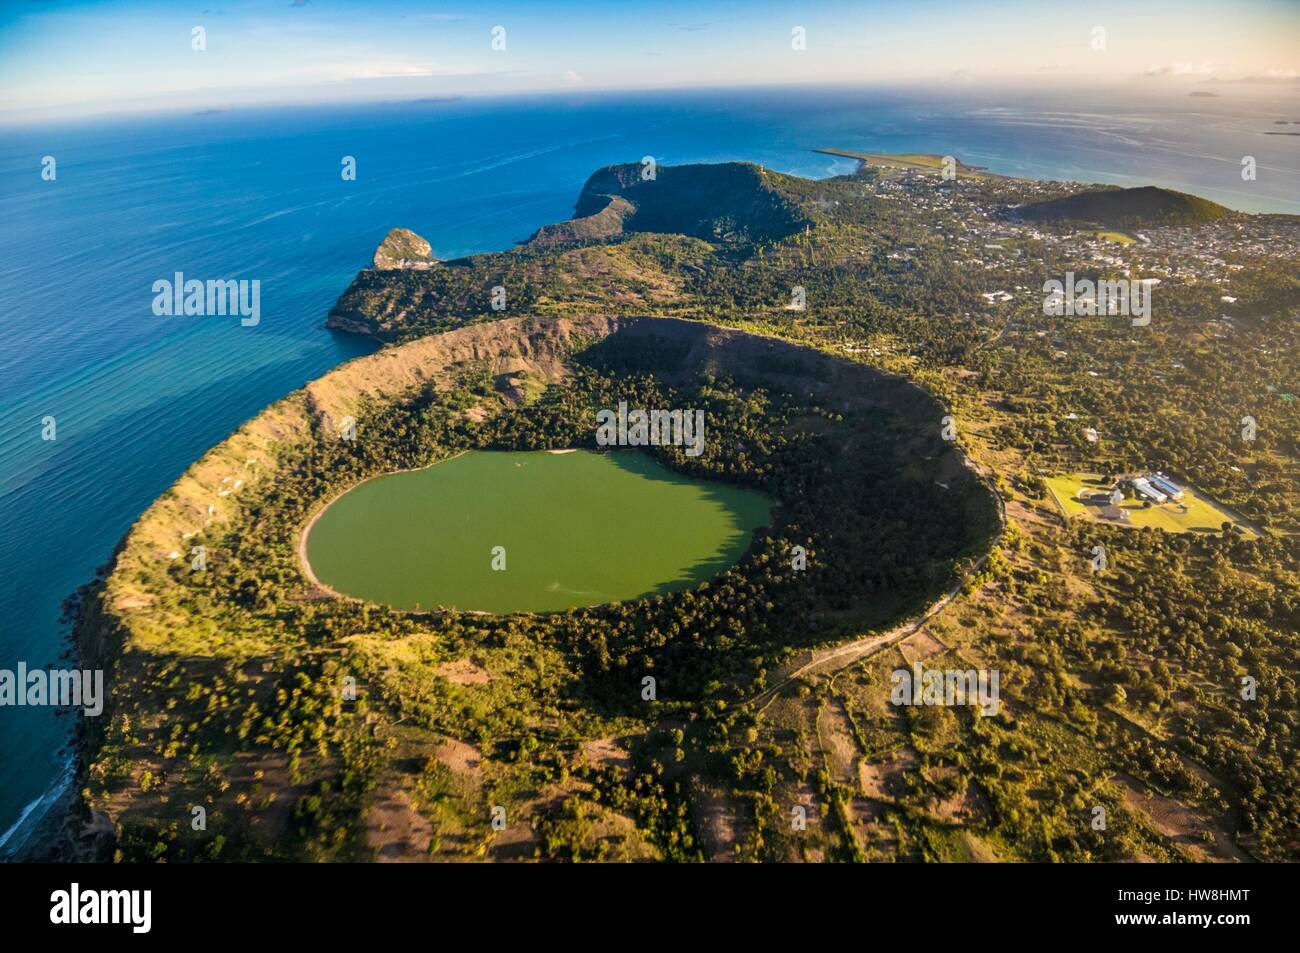 Francia, isola di Mayotte (dipartimento francese d' oltremare), Petite Terre,  Labattoir, il cratere e il suo verde acido lago Dziani Dzaha su Petite Terre  (vista aerea Foto stock - Alamy